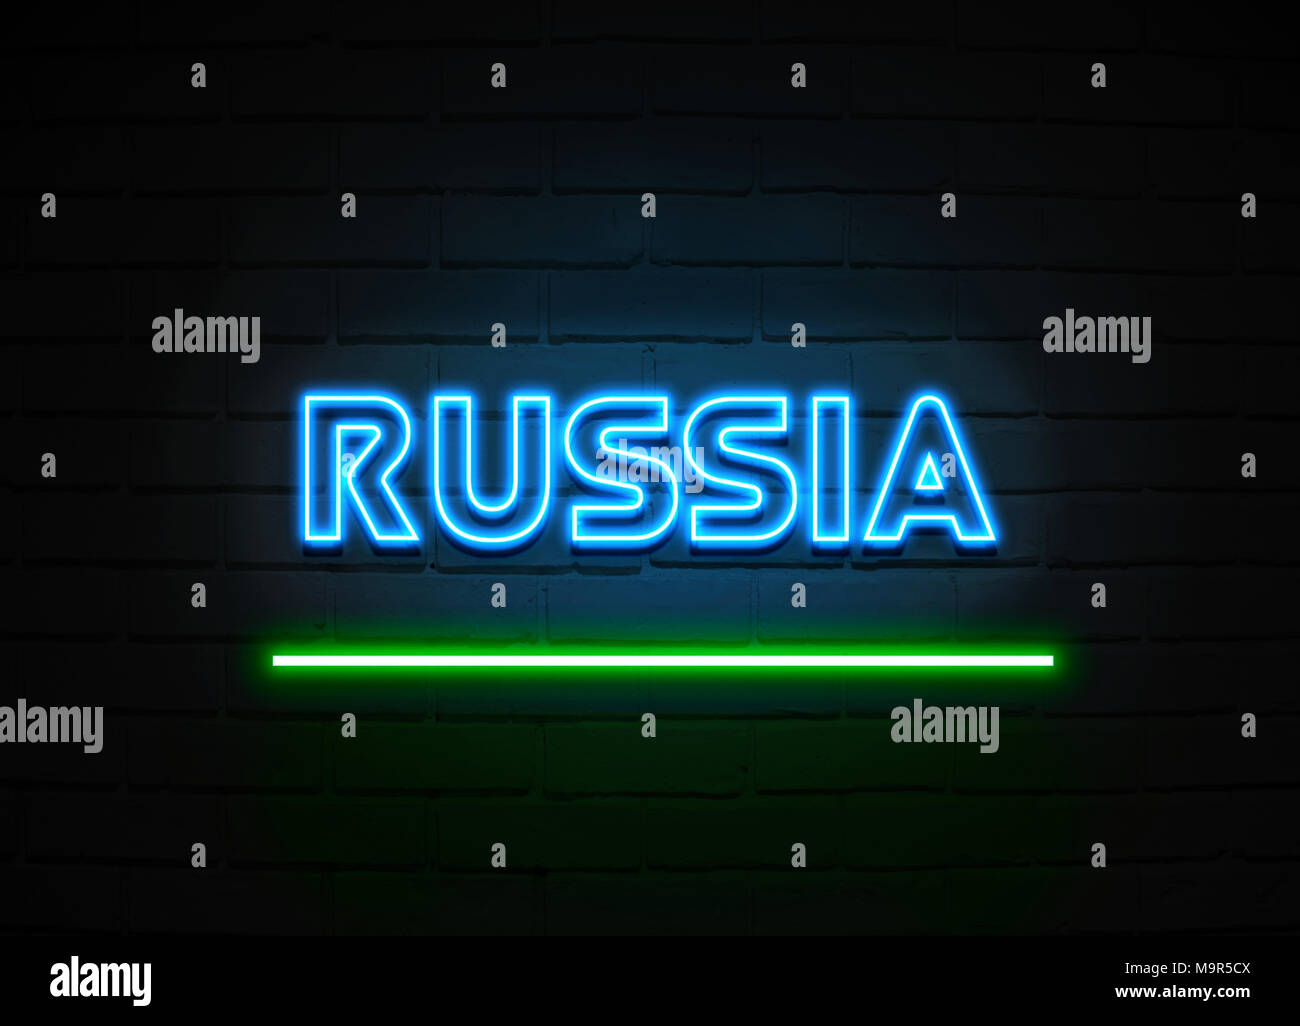 Russland Leuchtreklame - glühende Leuchtreklame auf brickwall Wand - 3D-Royalty Free Stock Illustration dargestellt. Stockfoto